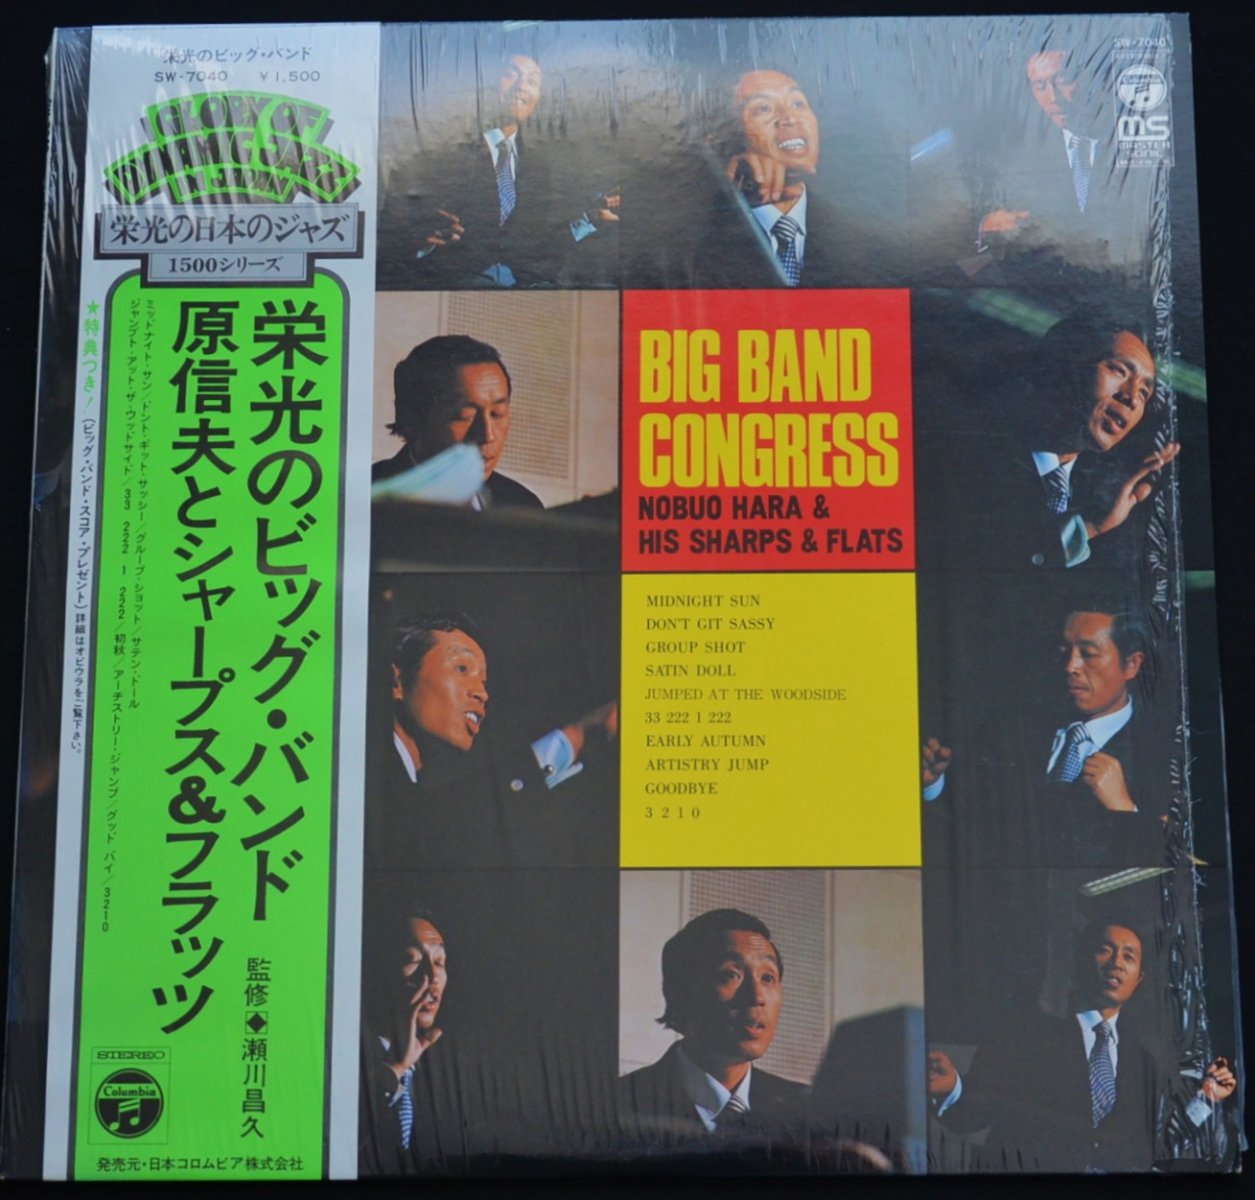 原信夫とシャープス & フラッツ NOBUO HARA AND HIS SHARPS & FLATS / 栄光のビッグ・バンド BIG BAND CONGRESS (LP)